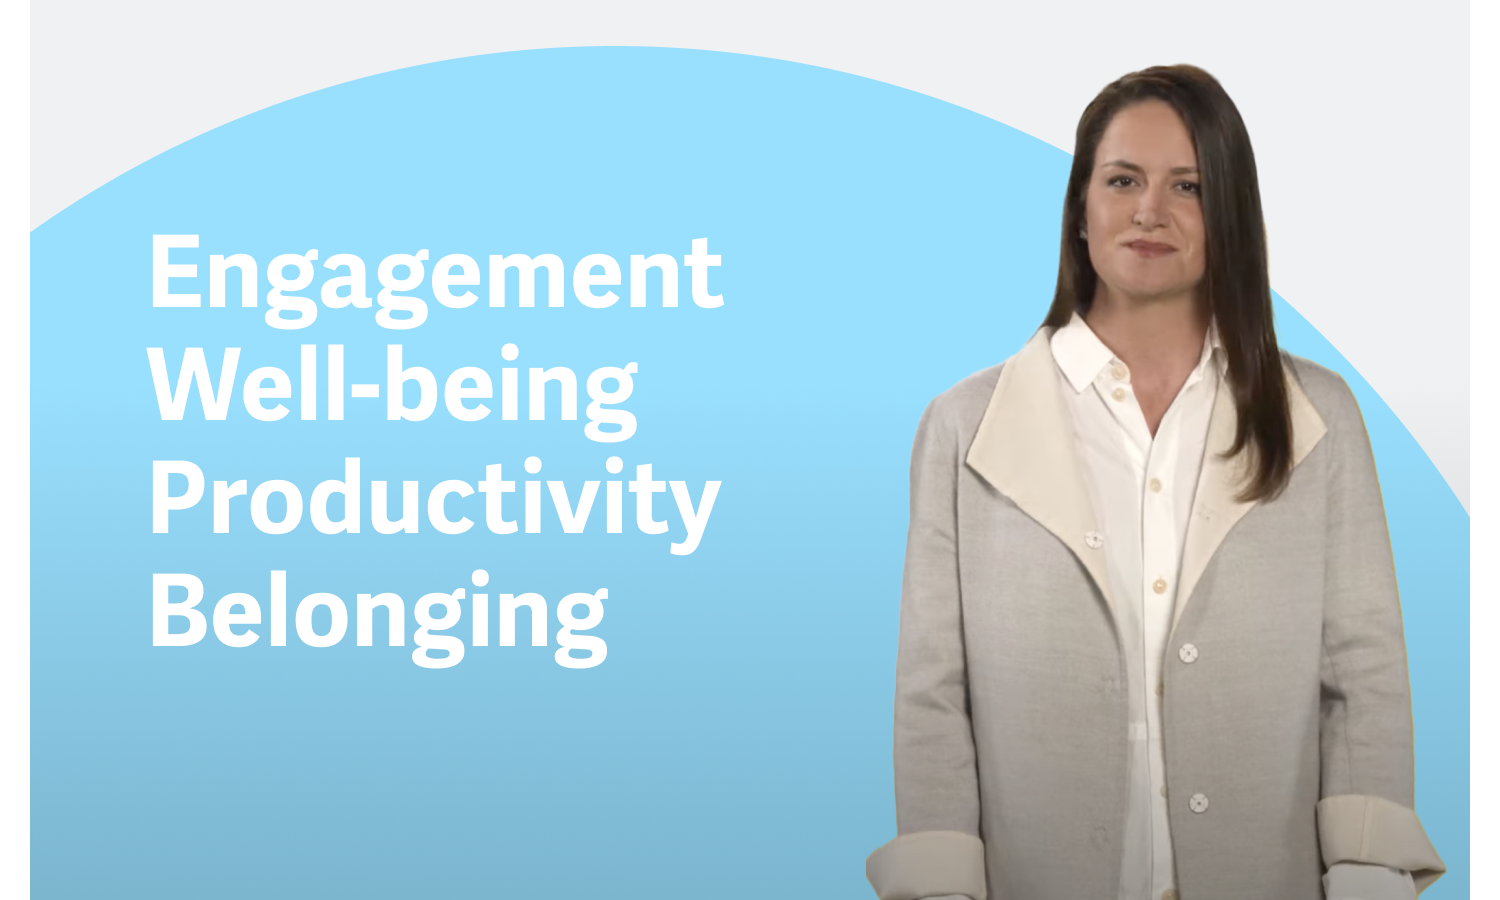 Vea el vídeo清醒la visión de Workday de la gestión de la experiencia del empleado。